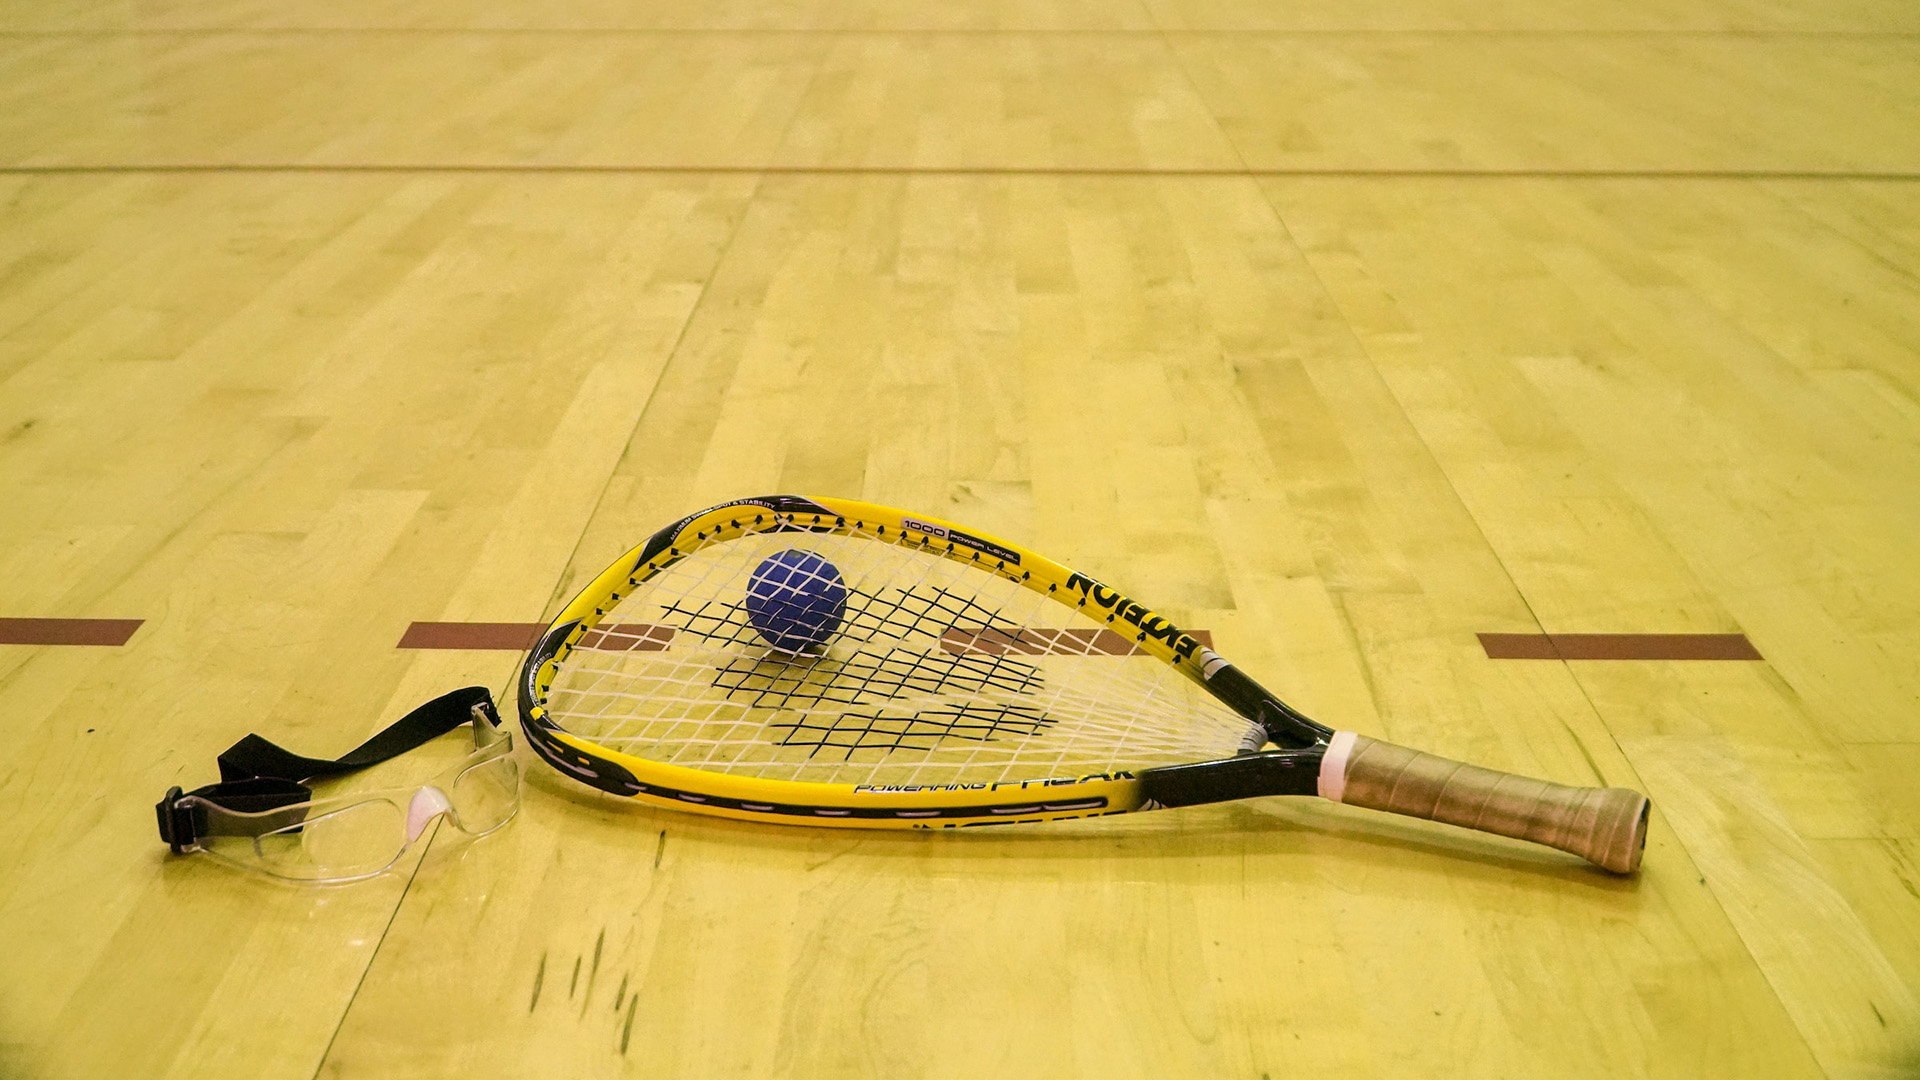 Racquetball court